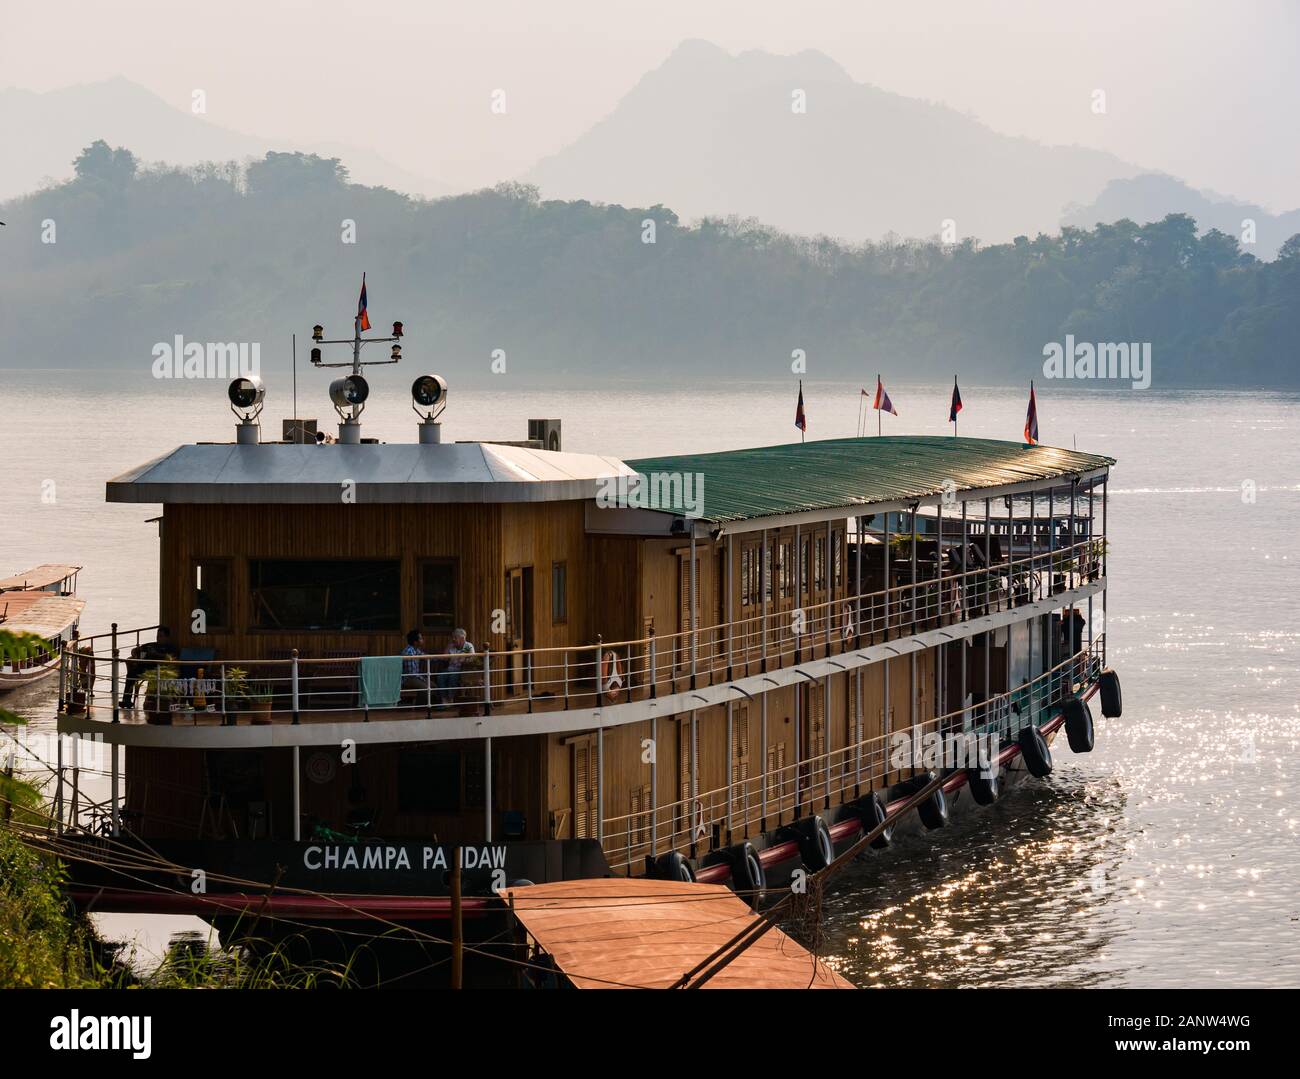 Crucero por el río barco anclado en la orilla, el río Mekong, Luang Prabang, Laos, Sudeste de Asia Foto de stock